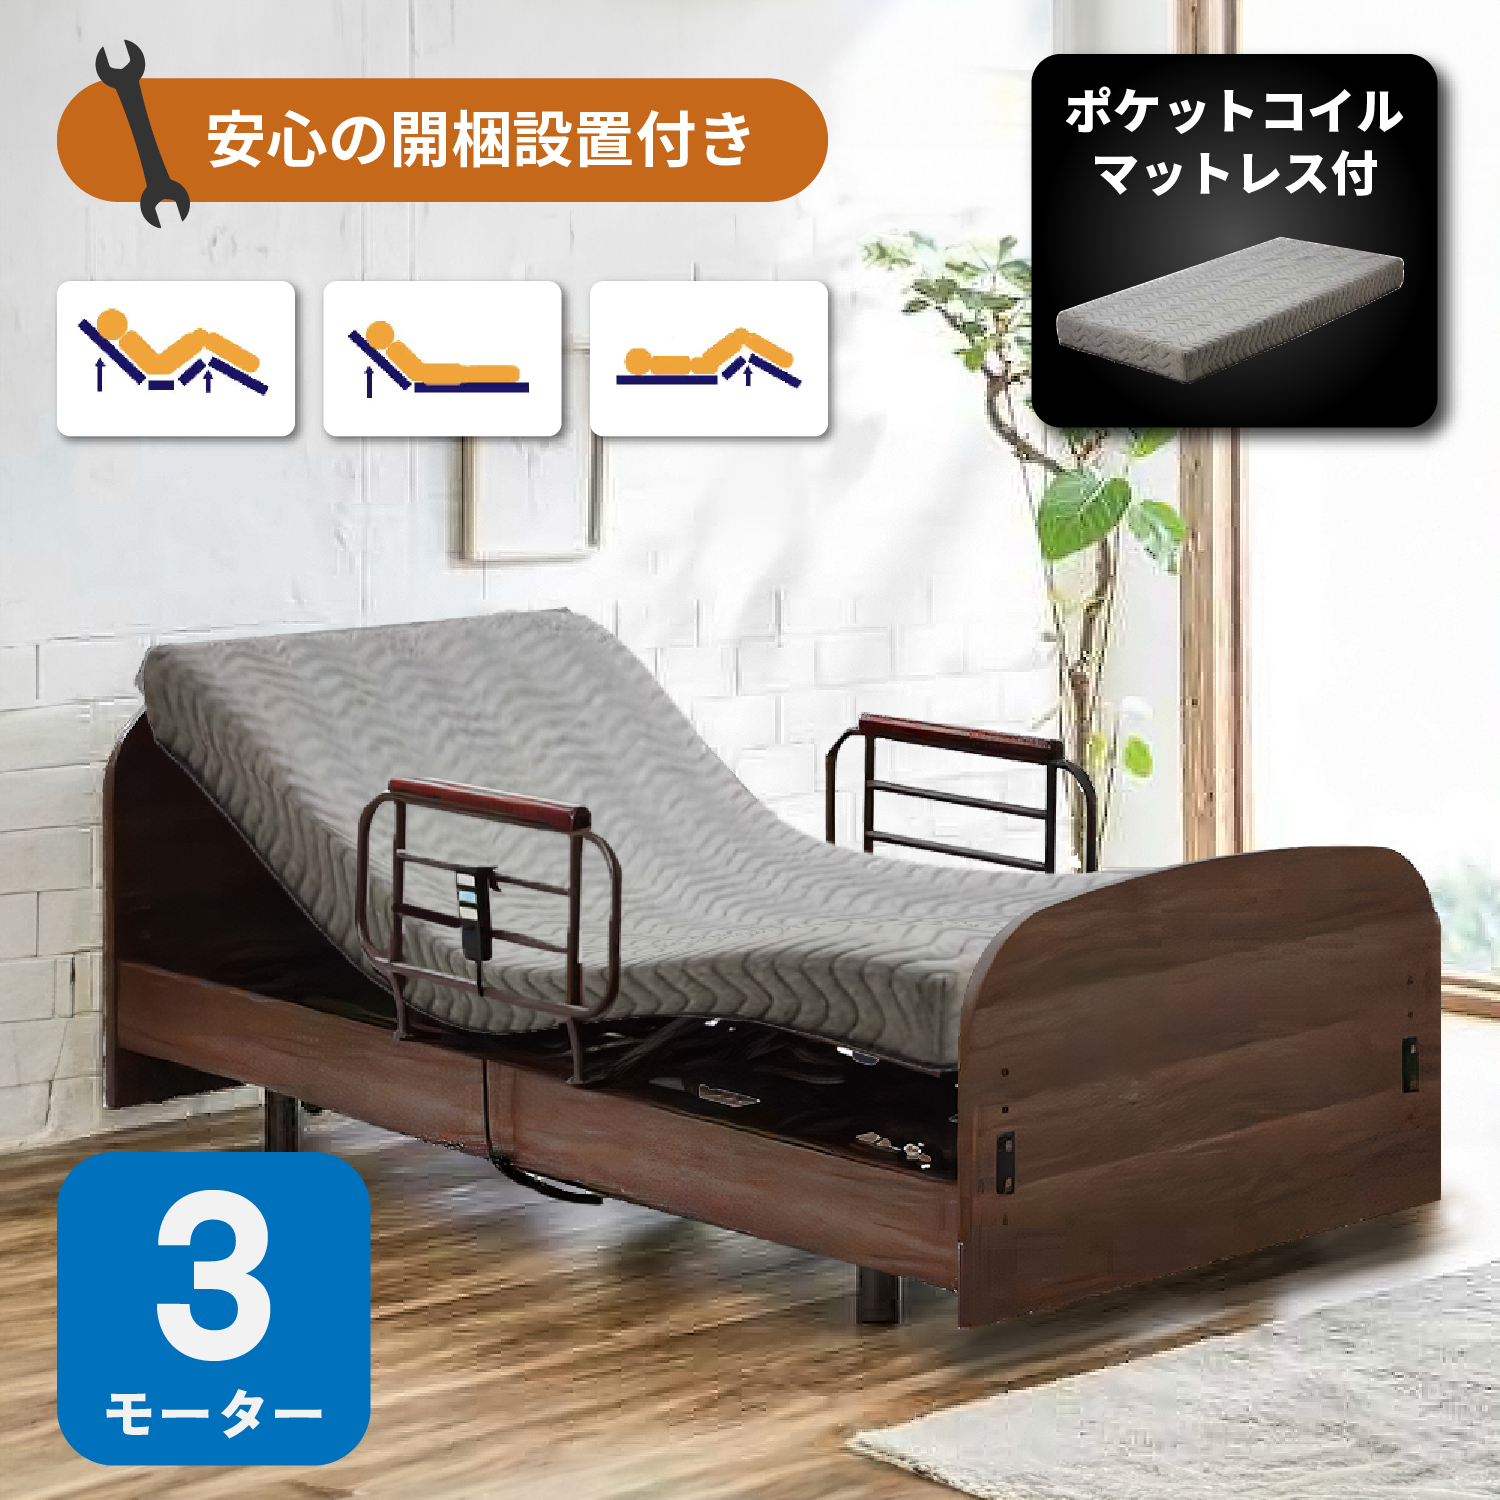 電動ベッド 3モーター ポケットコイルマットレス グランケアスリムプロ付き Lキャビタイプ リクライニングベッド 介護ベッド - 1